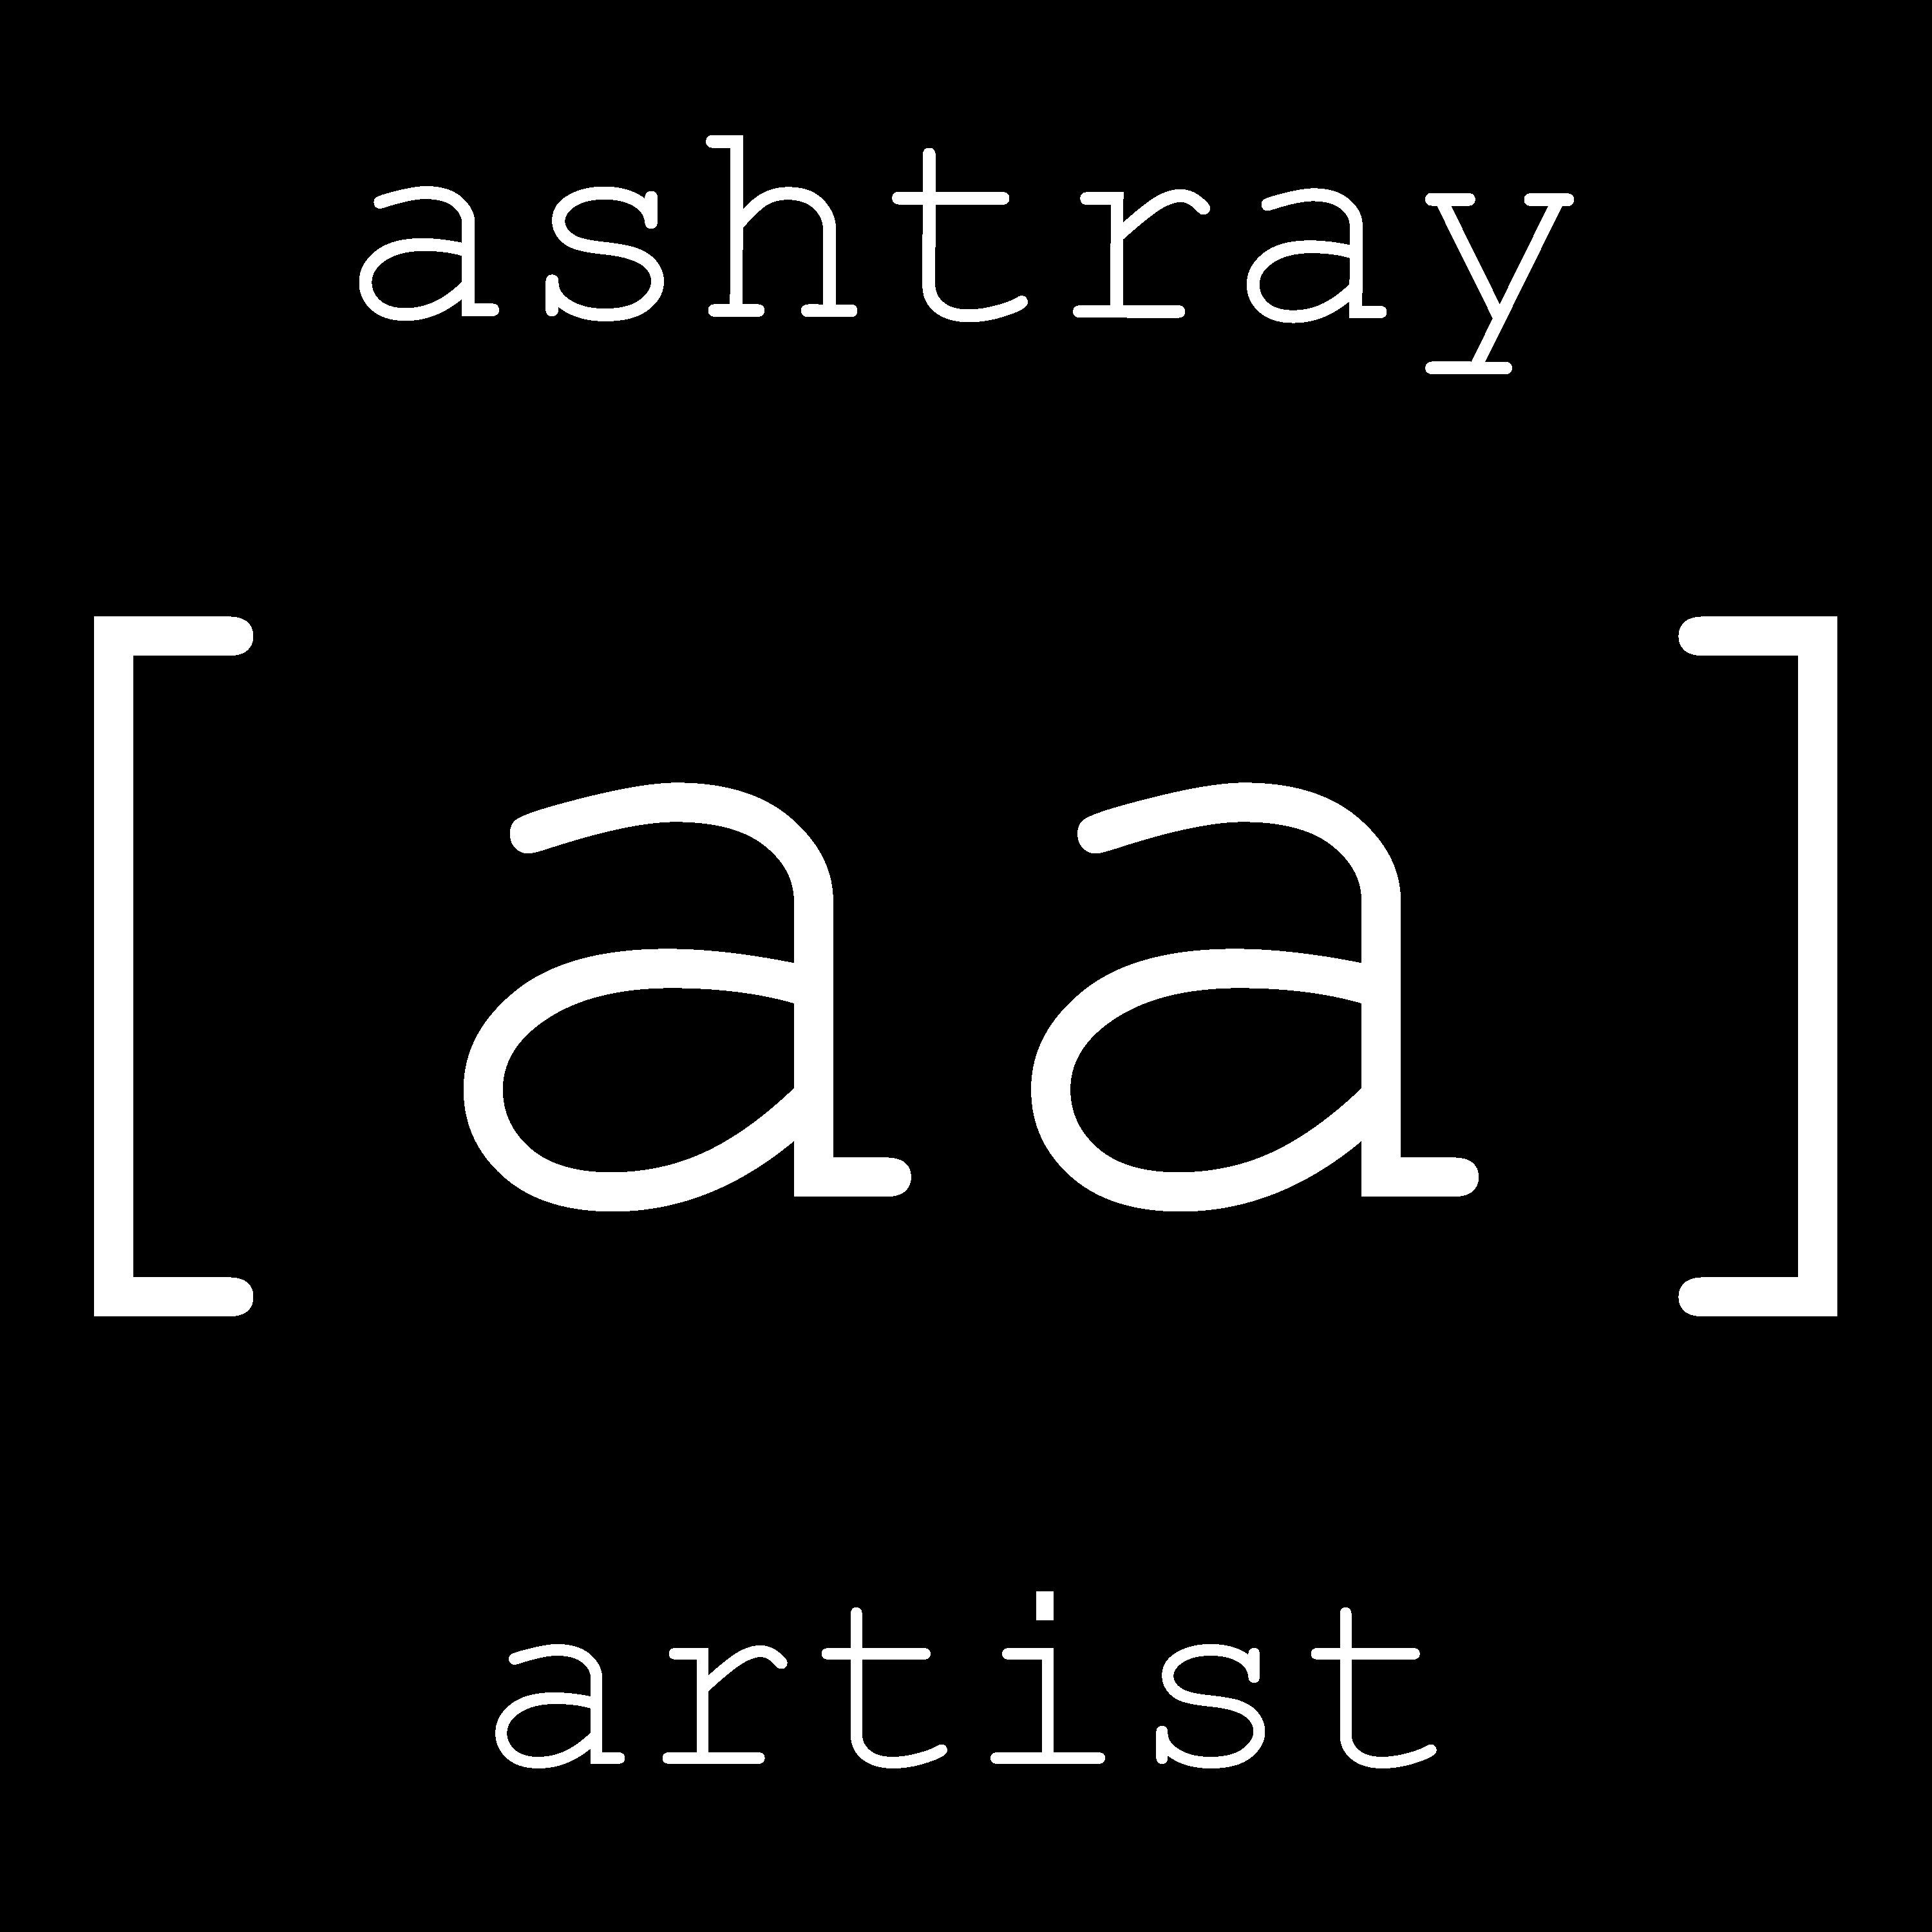 Ashtray Artist